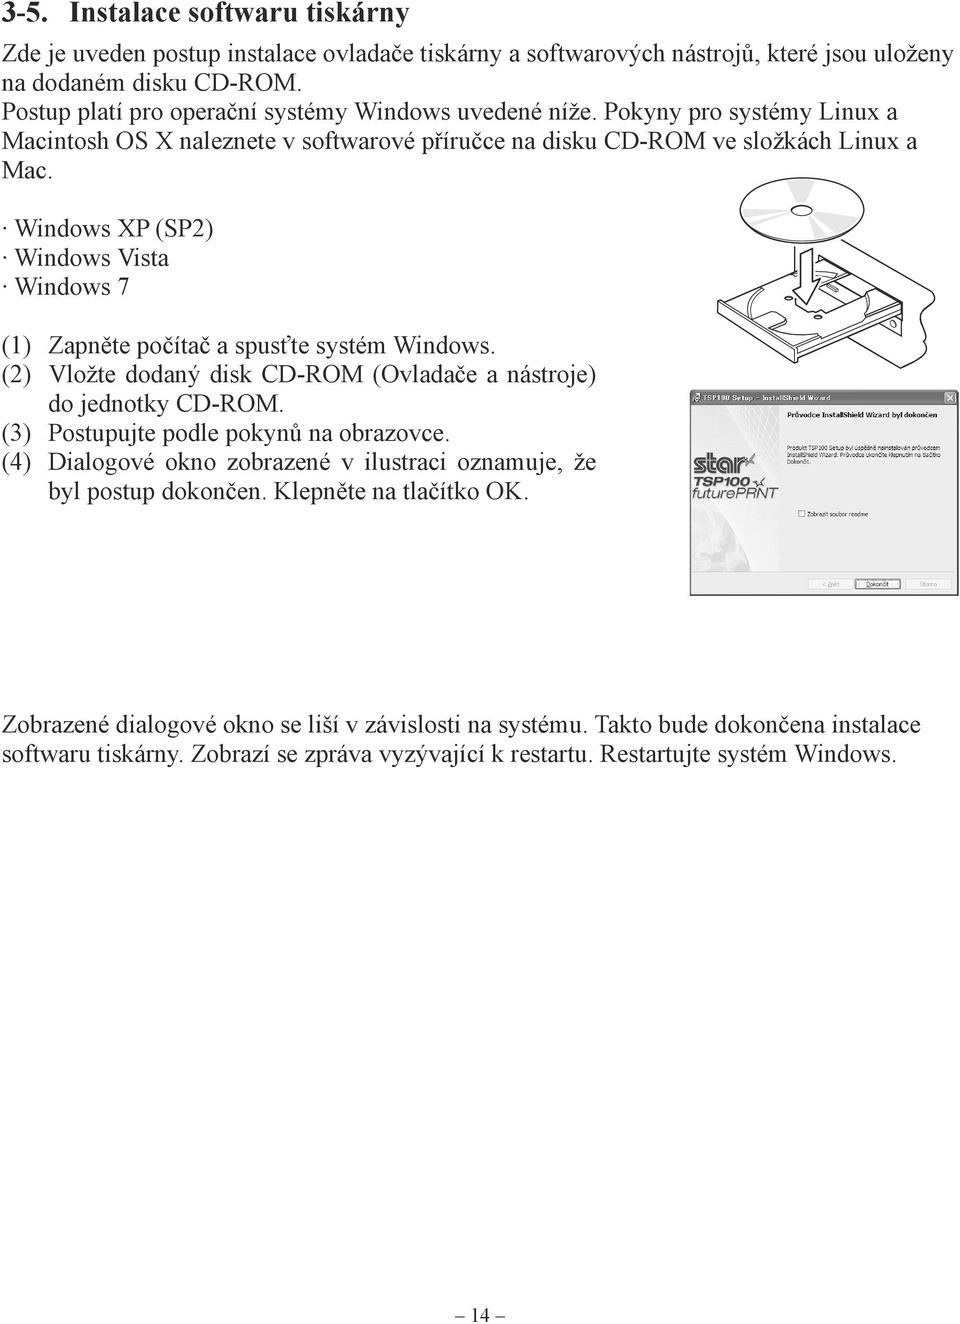 Windows XP (SP2) Windows Vista Windows 7 (1) Zapněte počítač a spusťte systém Windows. (2) Vložte dodaný disk CD-ROM (Ovladače a nástroje) do jednotky CD-ROM. (3) Postupujte podle pokynů na obrazovce.